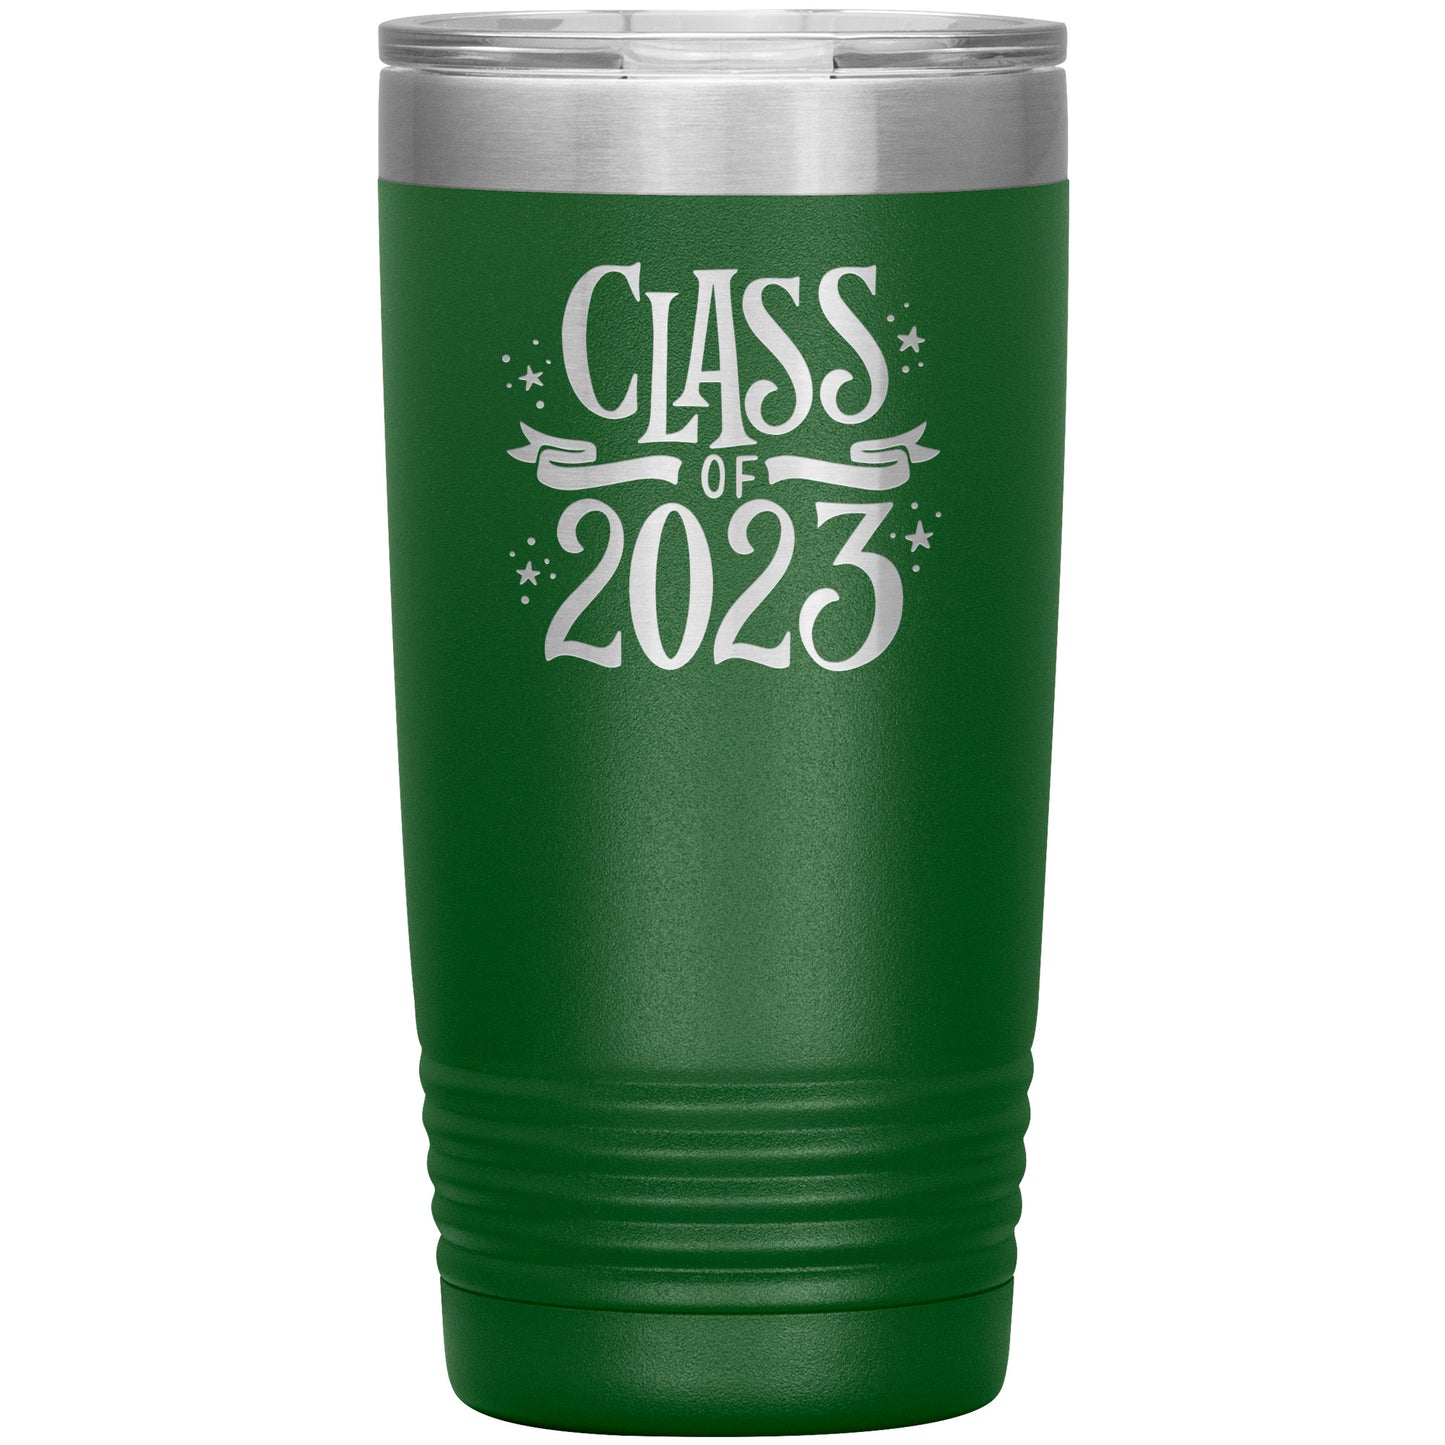 Class of 2023 Tumbler